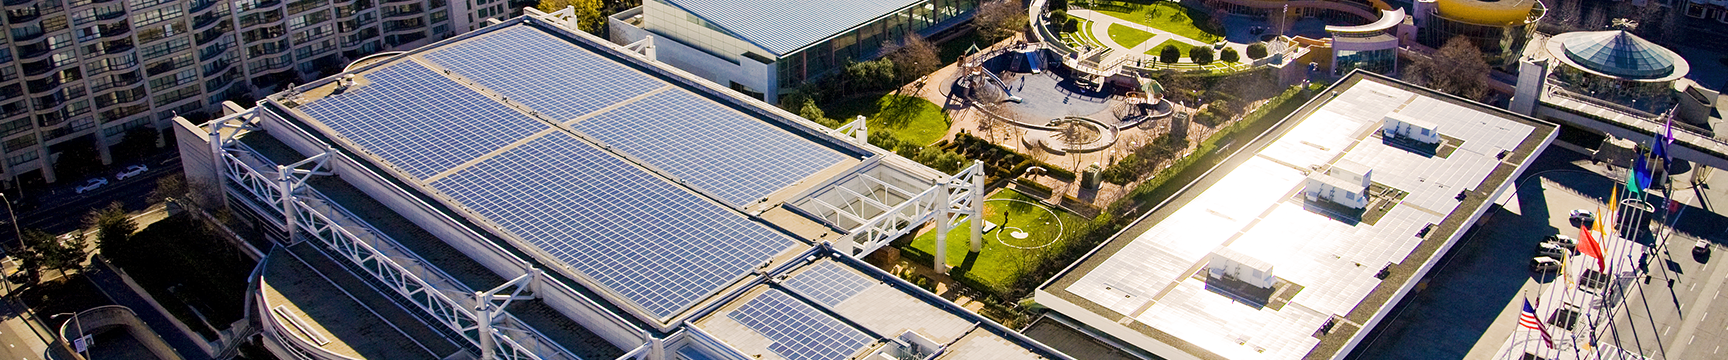 صورة جوية للمجموعة الشمسية في مركز موسكون في سان فرانسيسكو.